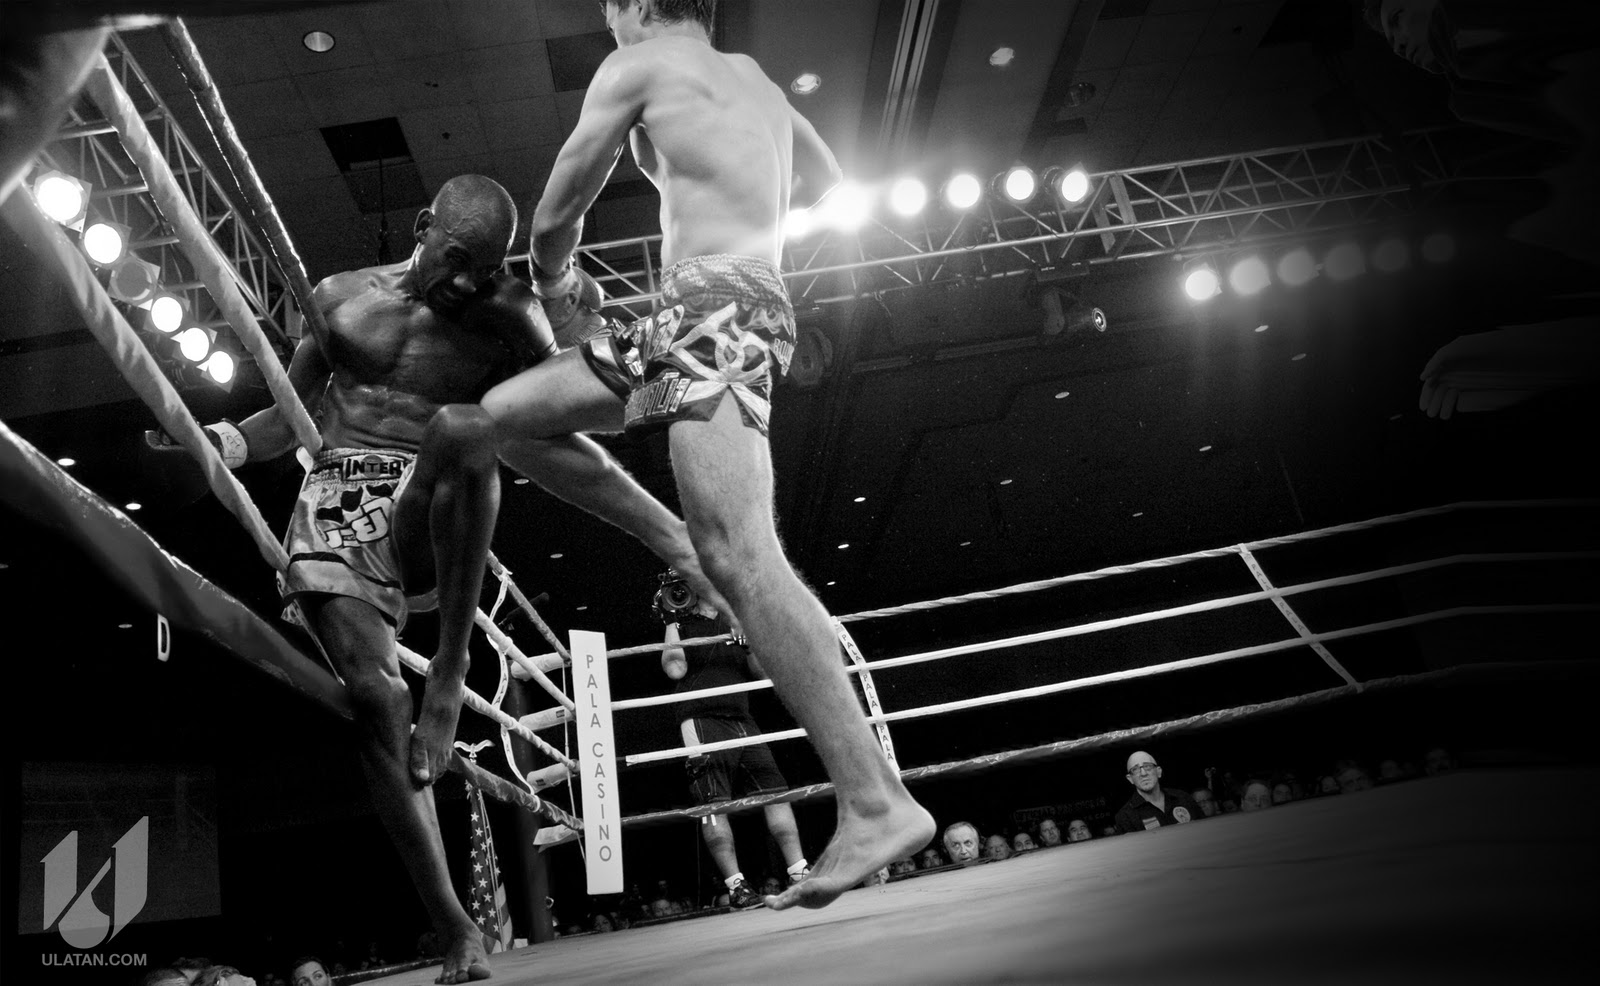 http://4.bp.blogspot.com/-DzWb9yxxwvc/TvoAuQj2BsI/AAAAAAAAAPk/57sZsuPTXNY/s1600/Muay-Thai-fight-boxing-Wallpaper-18.jpg